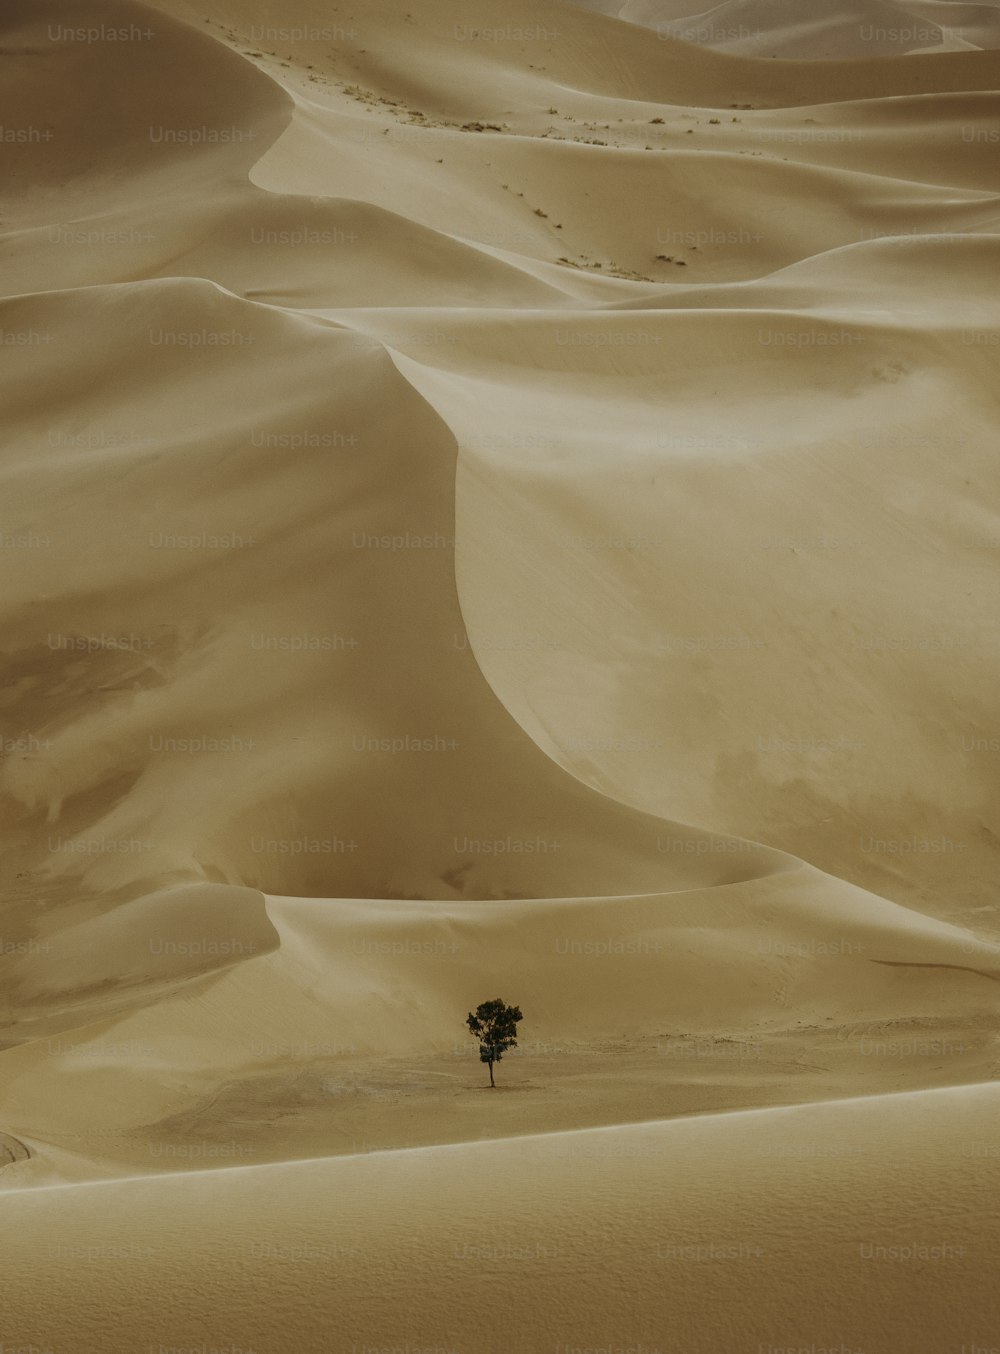 Ein einsamer Baum mitten in der Wüste